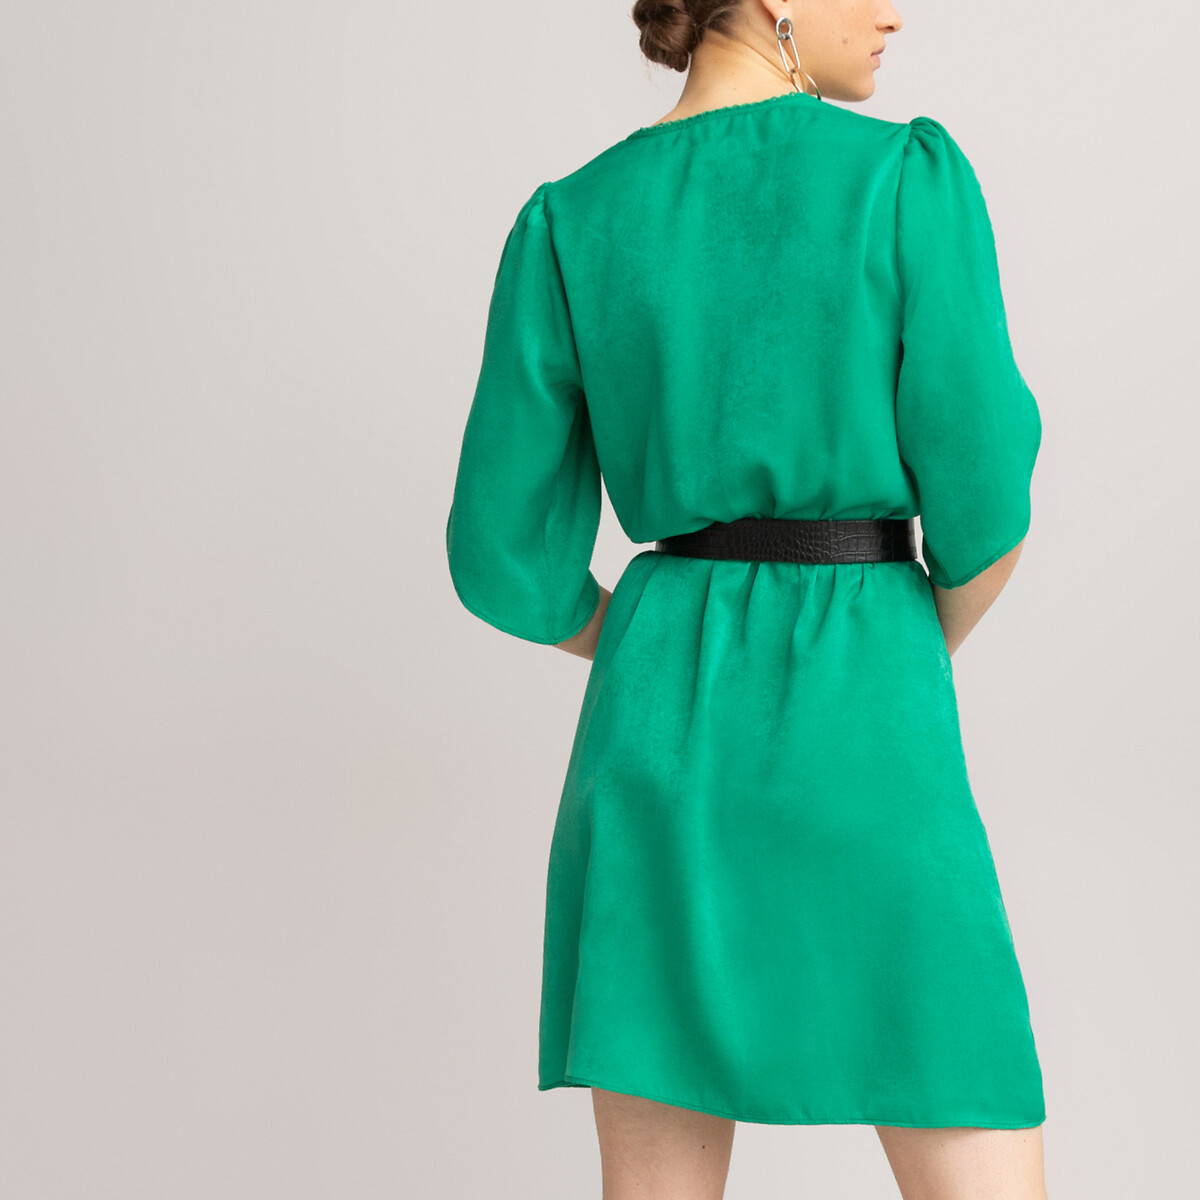 Платье LaRedoute Короткое с запахом короткие рукава 38 (FR) - 44 (RUS) зеленый, размер 38 (FR) - 44 (RUS) Короткое с запахом короткие рукава 38 (FR) - 44 (RUS) зеленый - фото 4